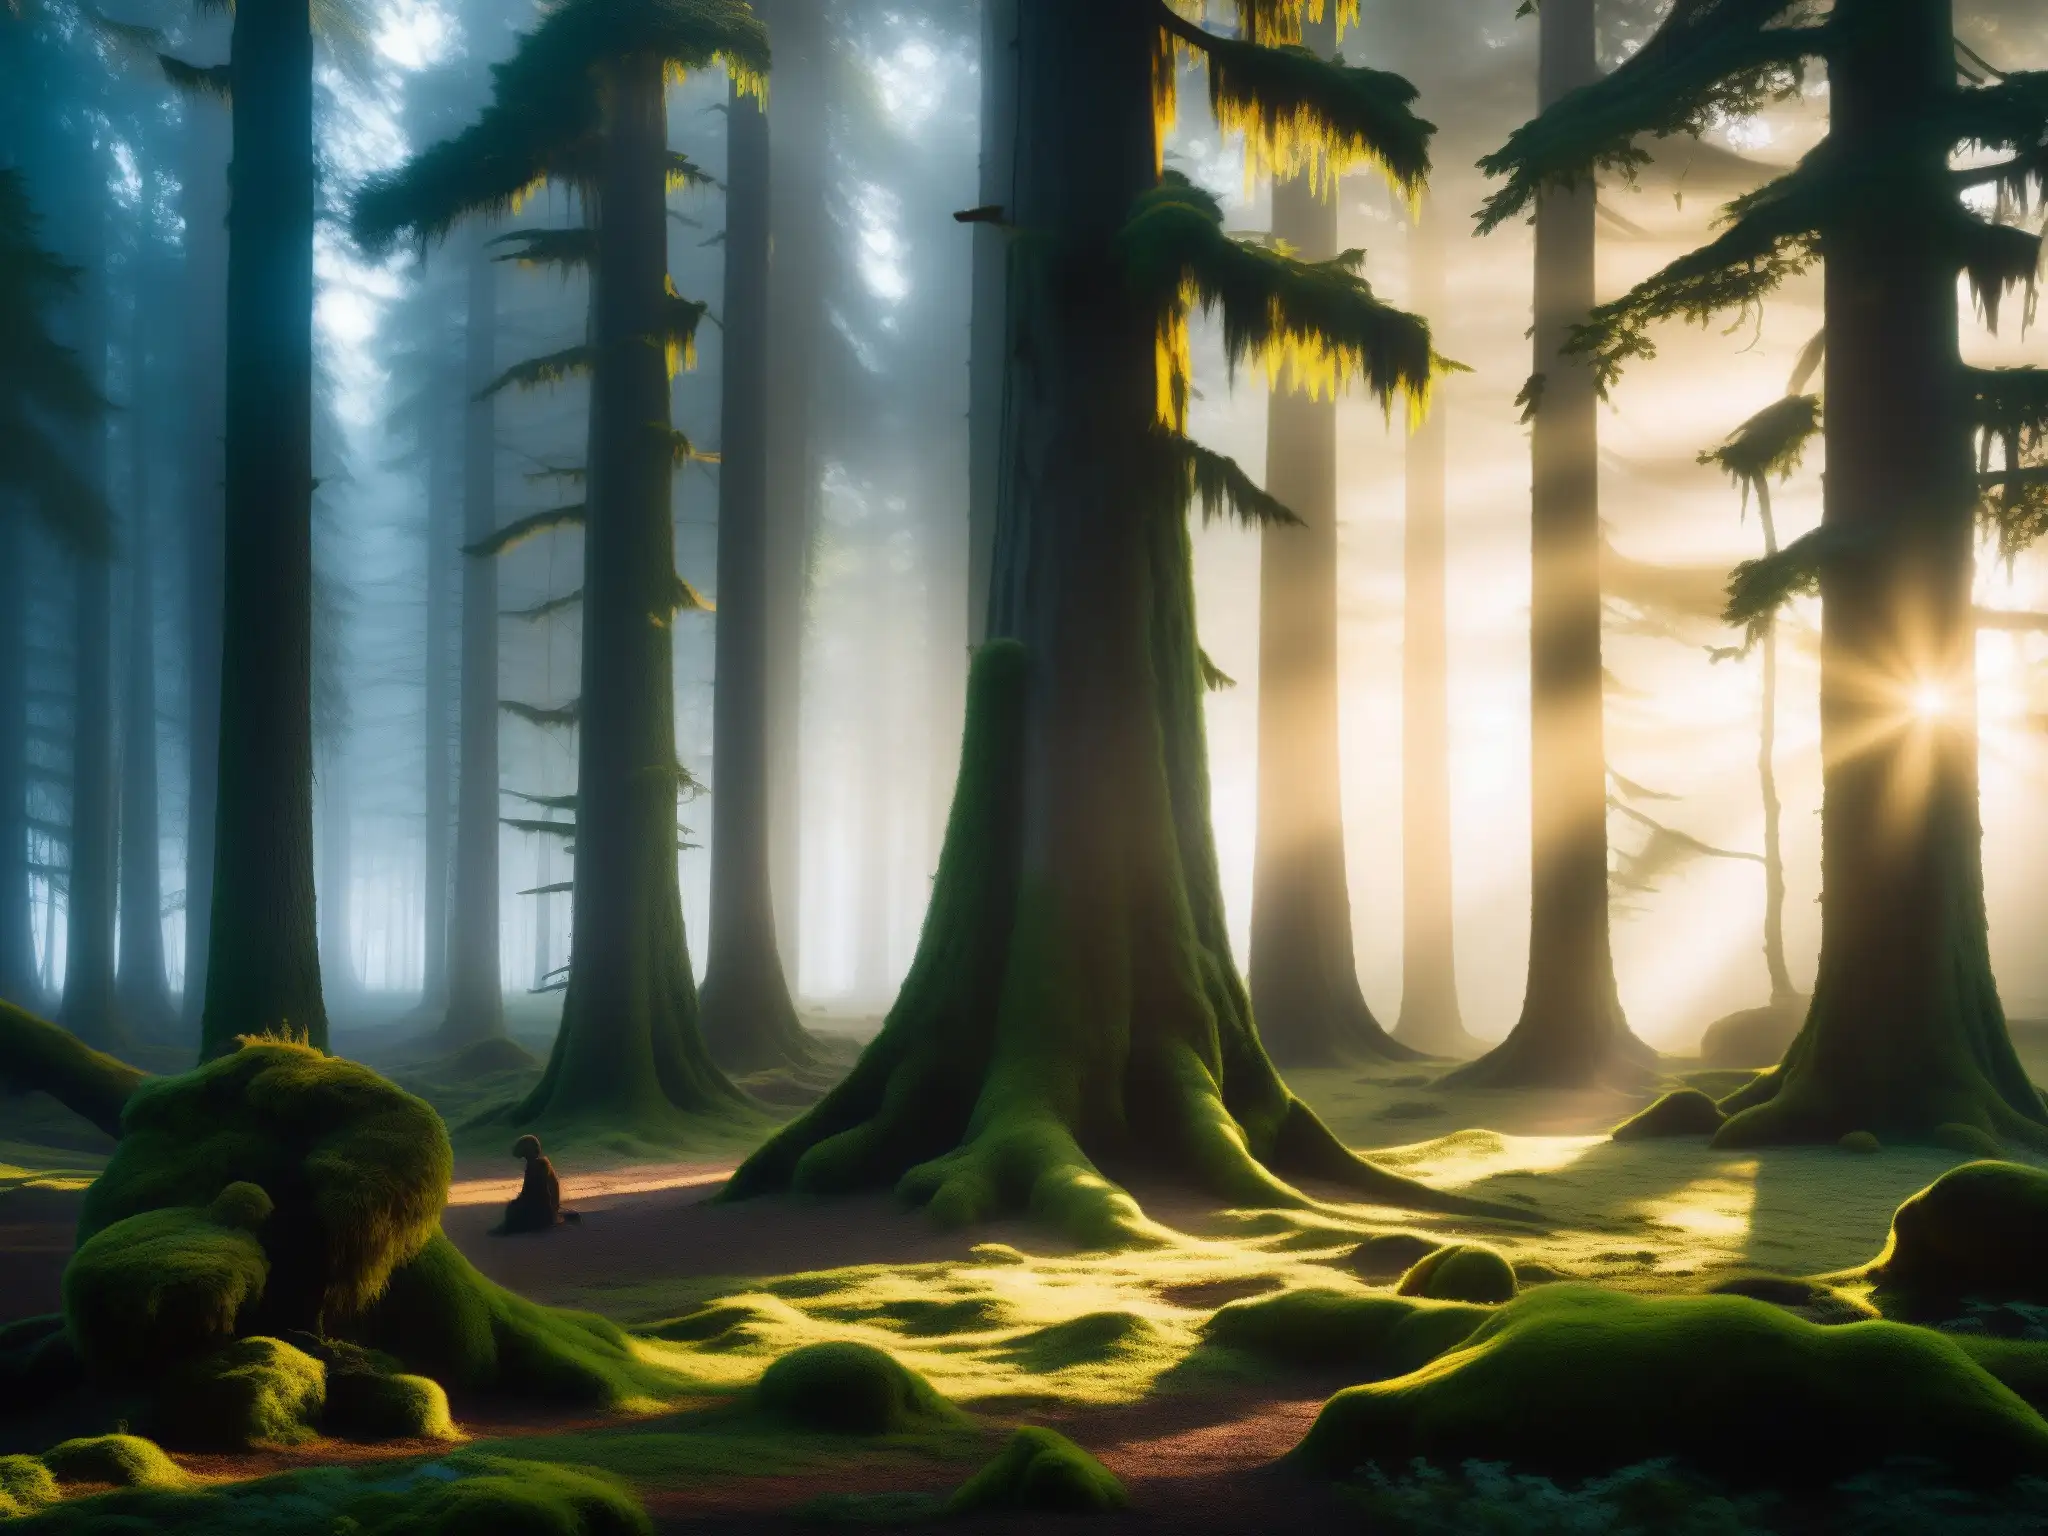 Un bosque misterioso y encantador al amanecer, donde la luz dorada ilumina árboles antiguos y el suelo cubierto de musgo